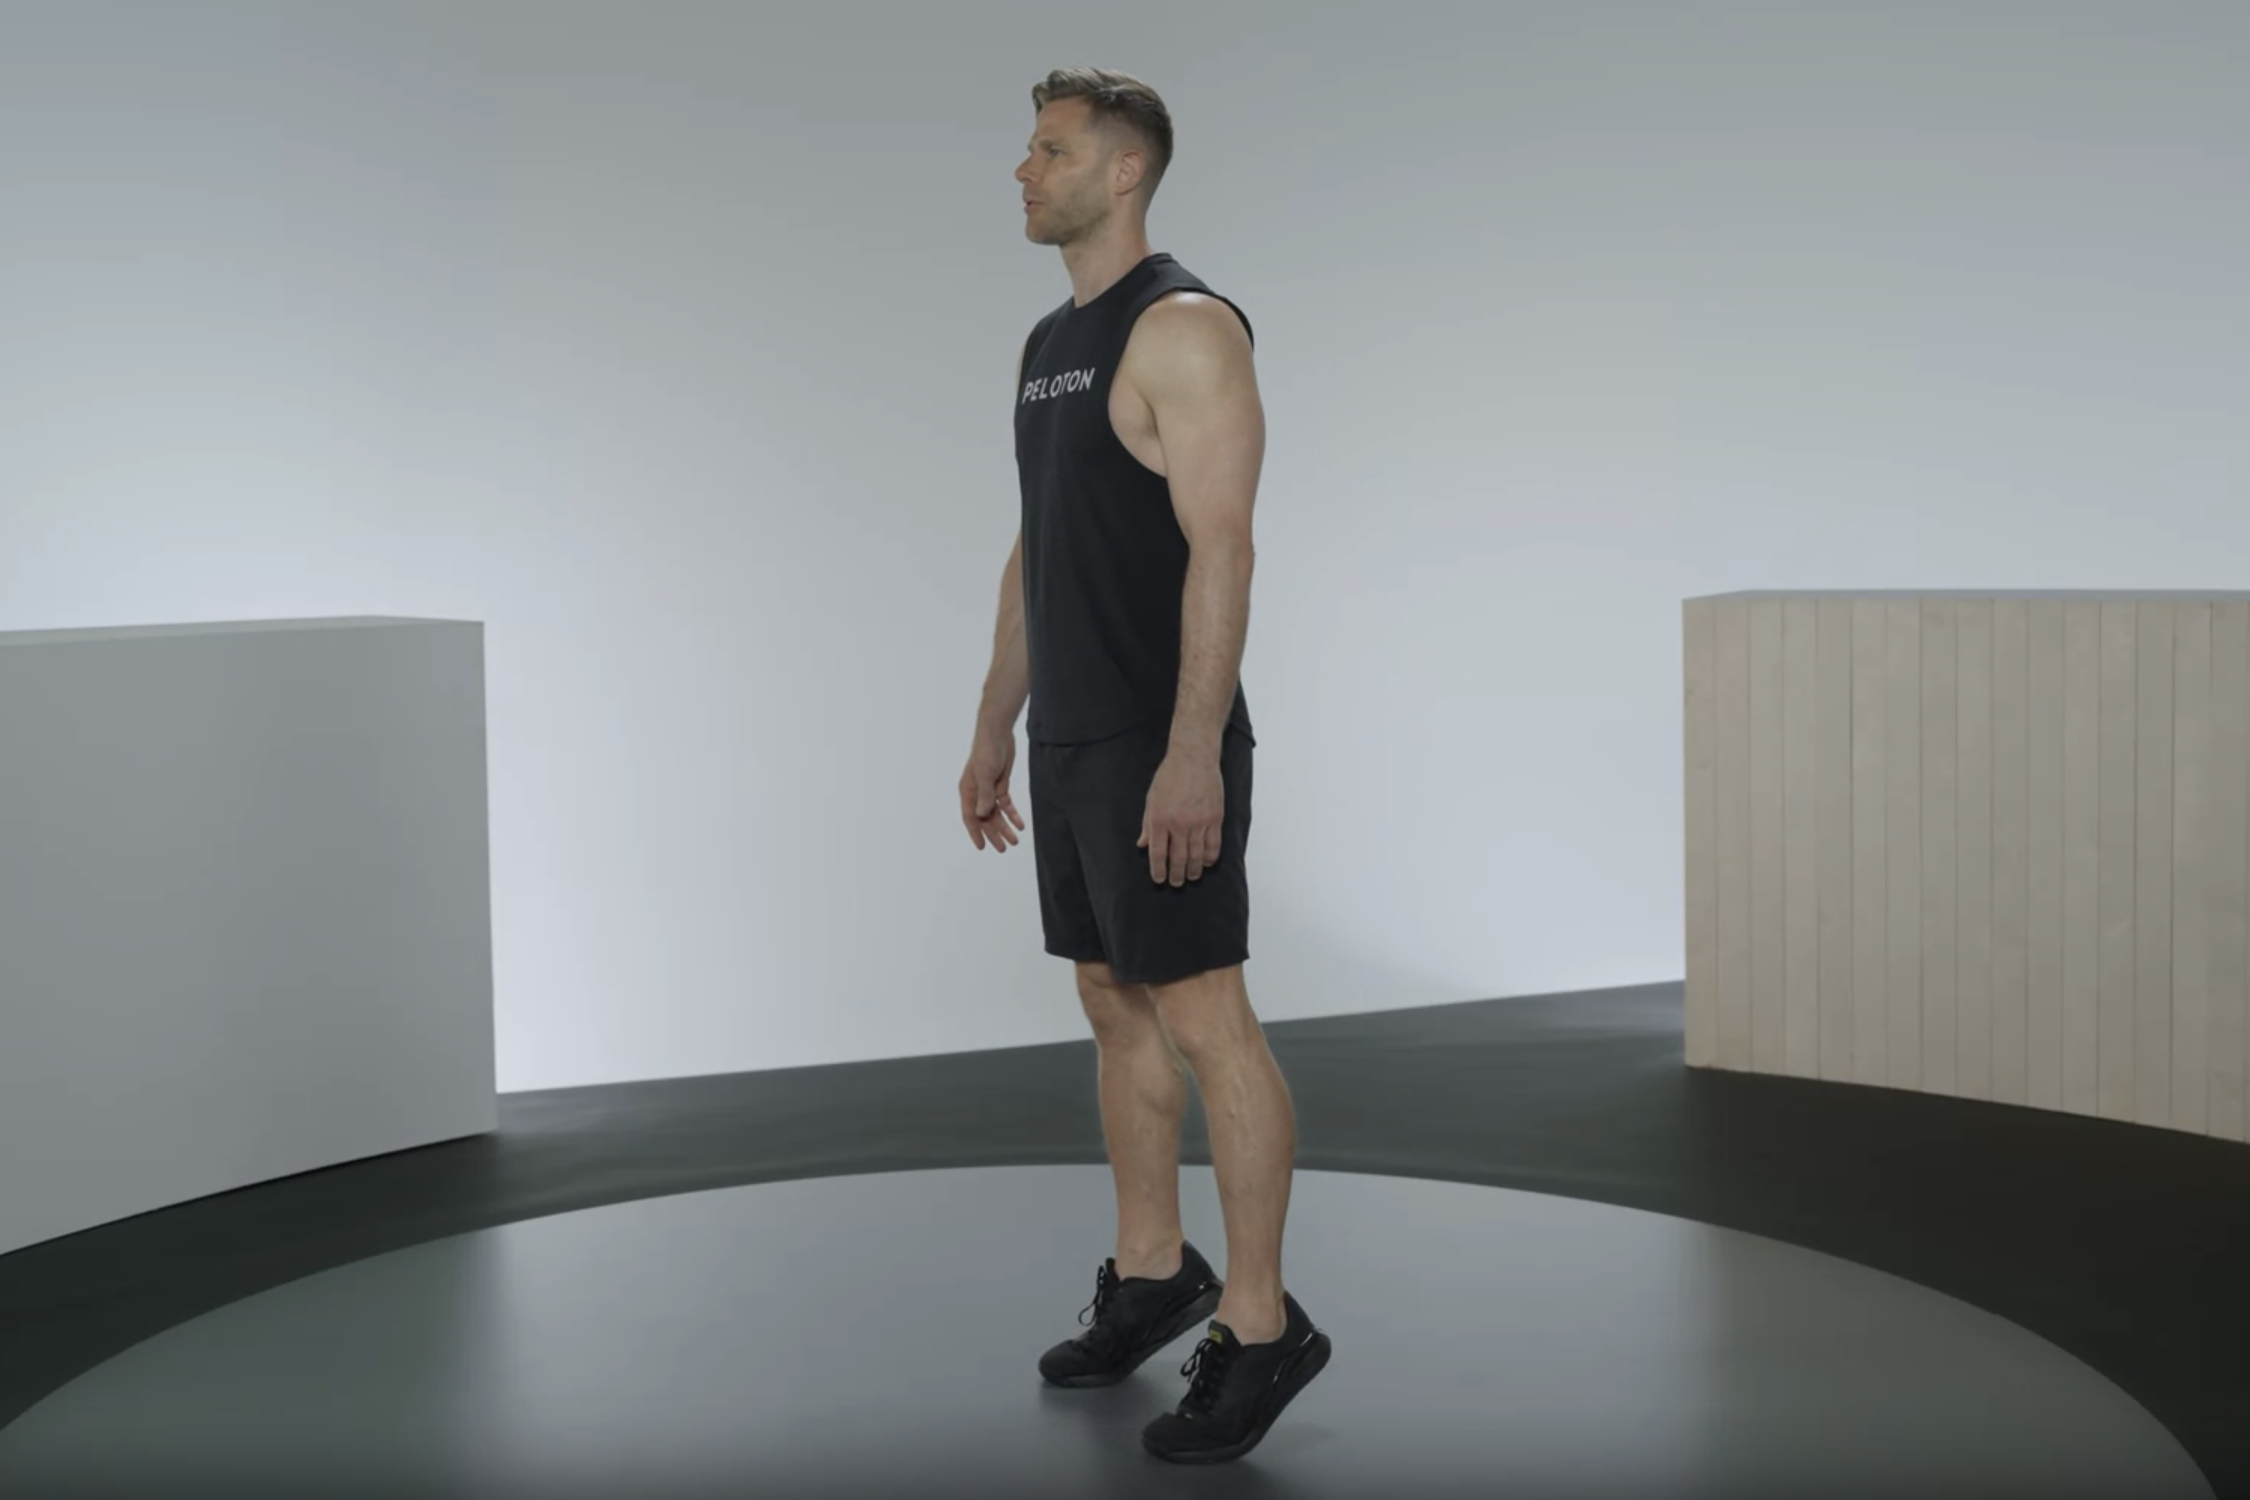 10 Best Beginner Leg Workout Exercises for Men